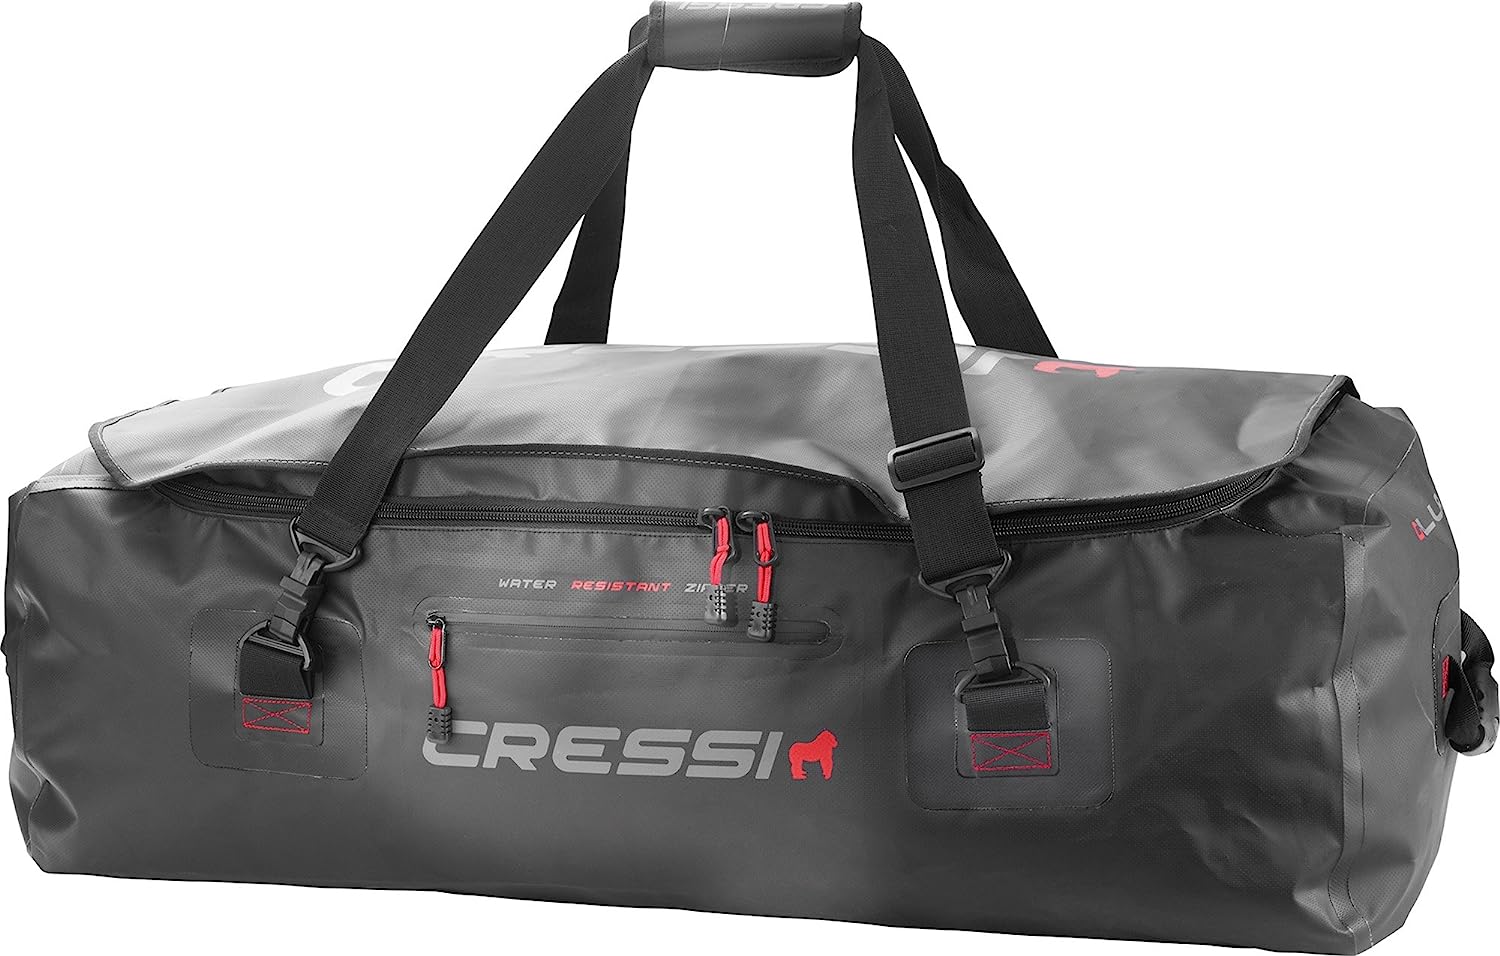 Cressi Gorilla Pro XL Duffel Bag